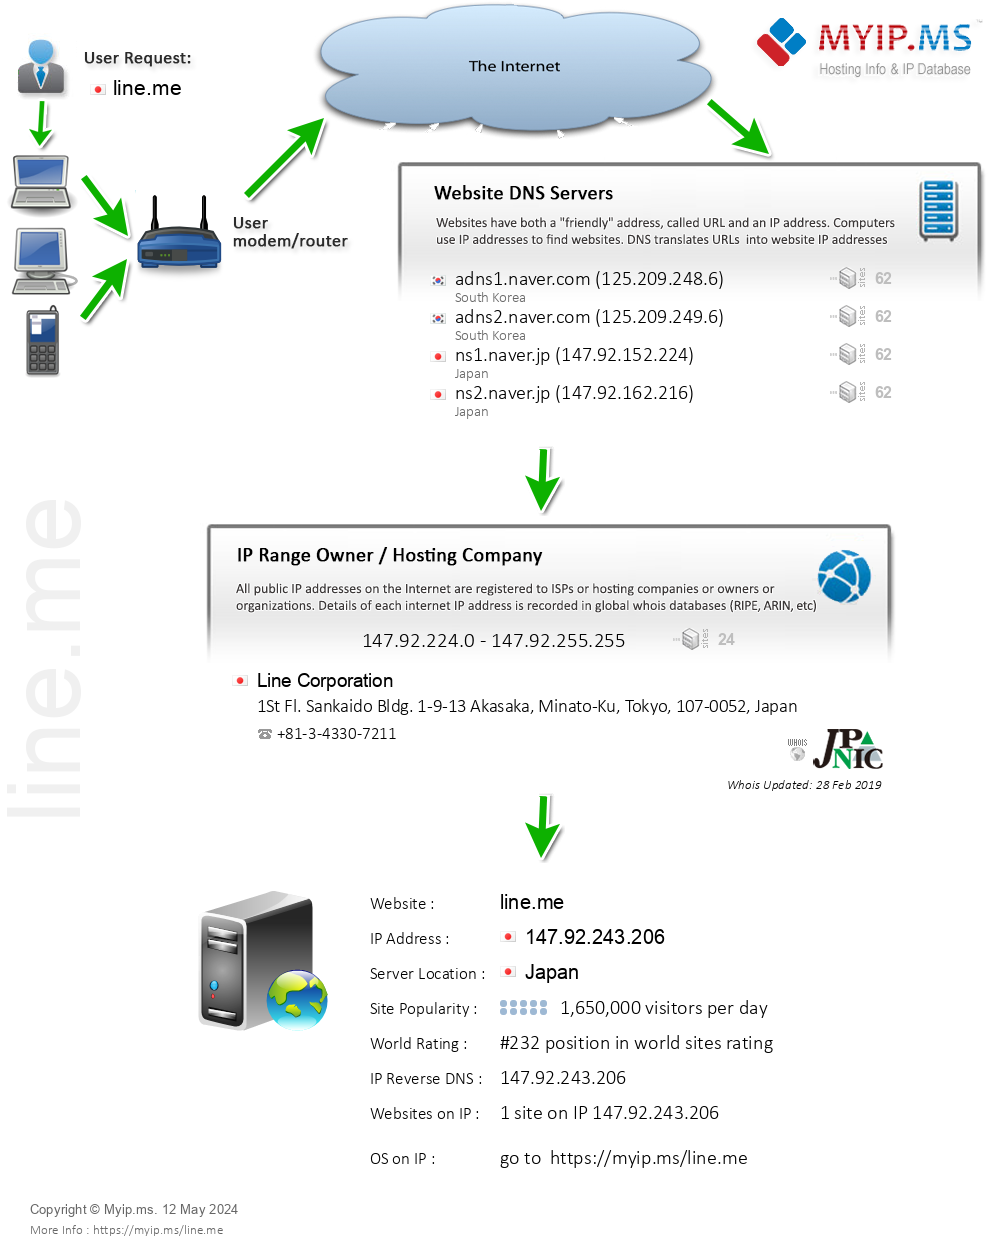 Line.me - Website Hosting Visual IP Diagram